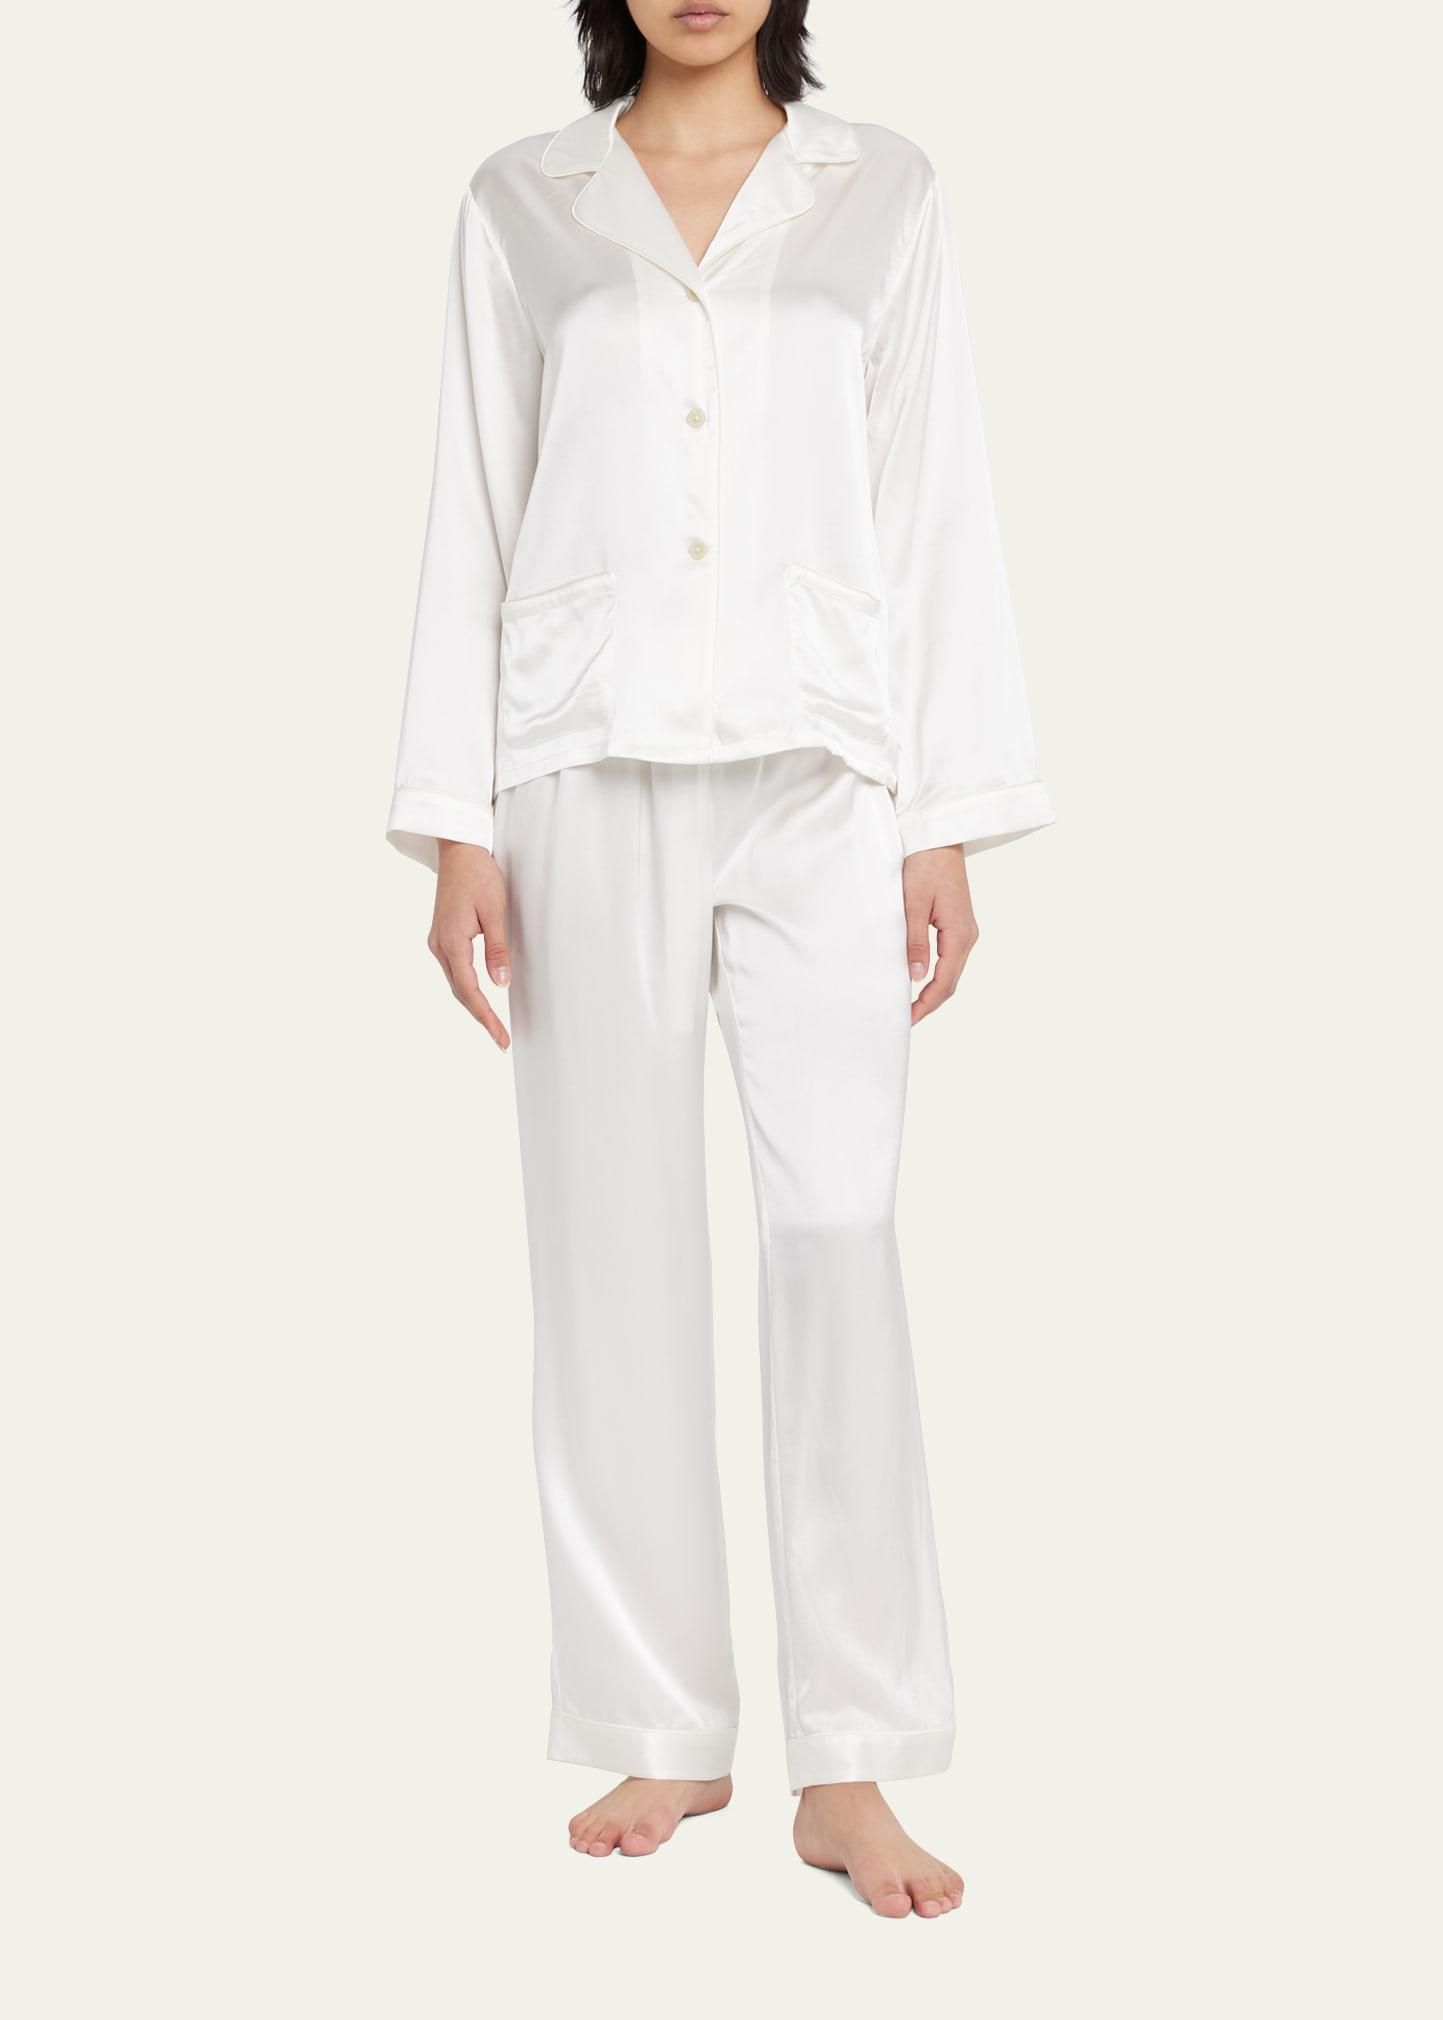 Morgan Lane Jane Chantal Silk Pajama Set in White | Lyst